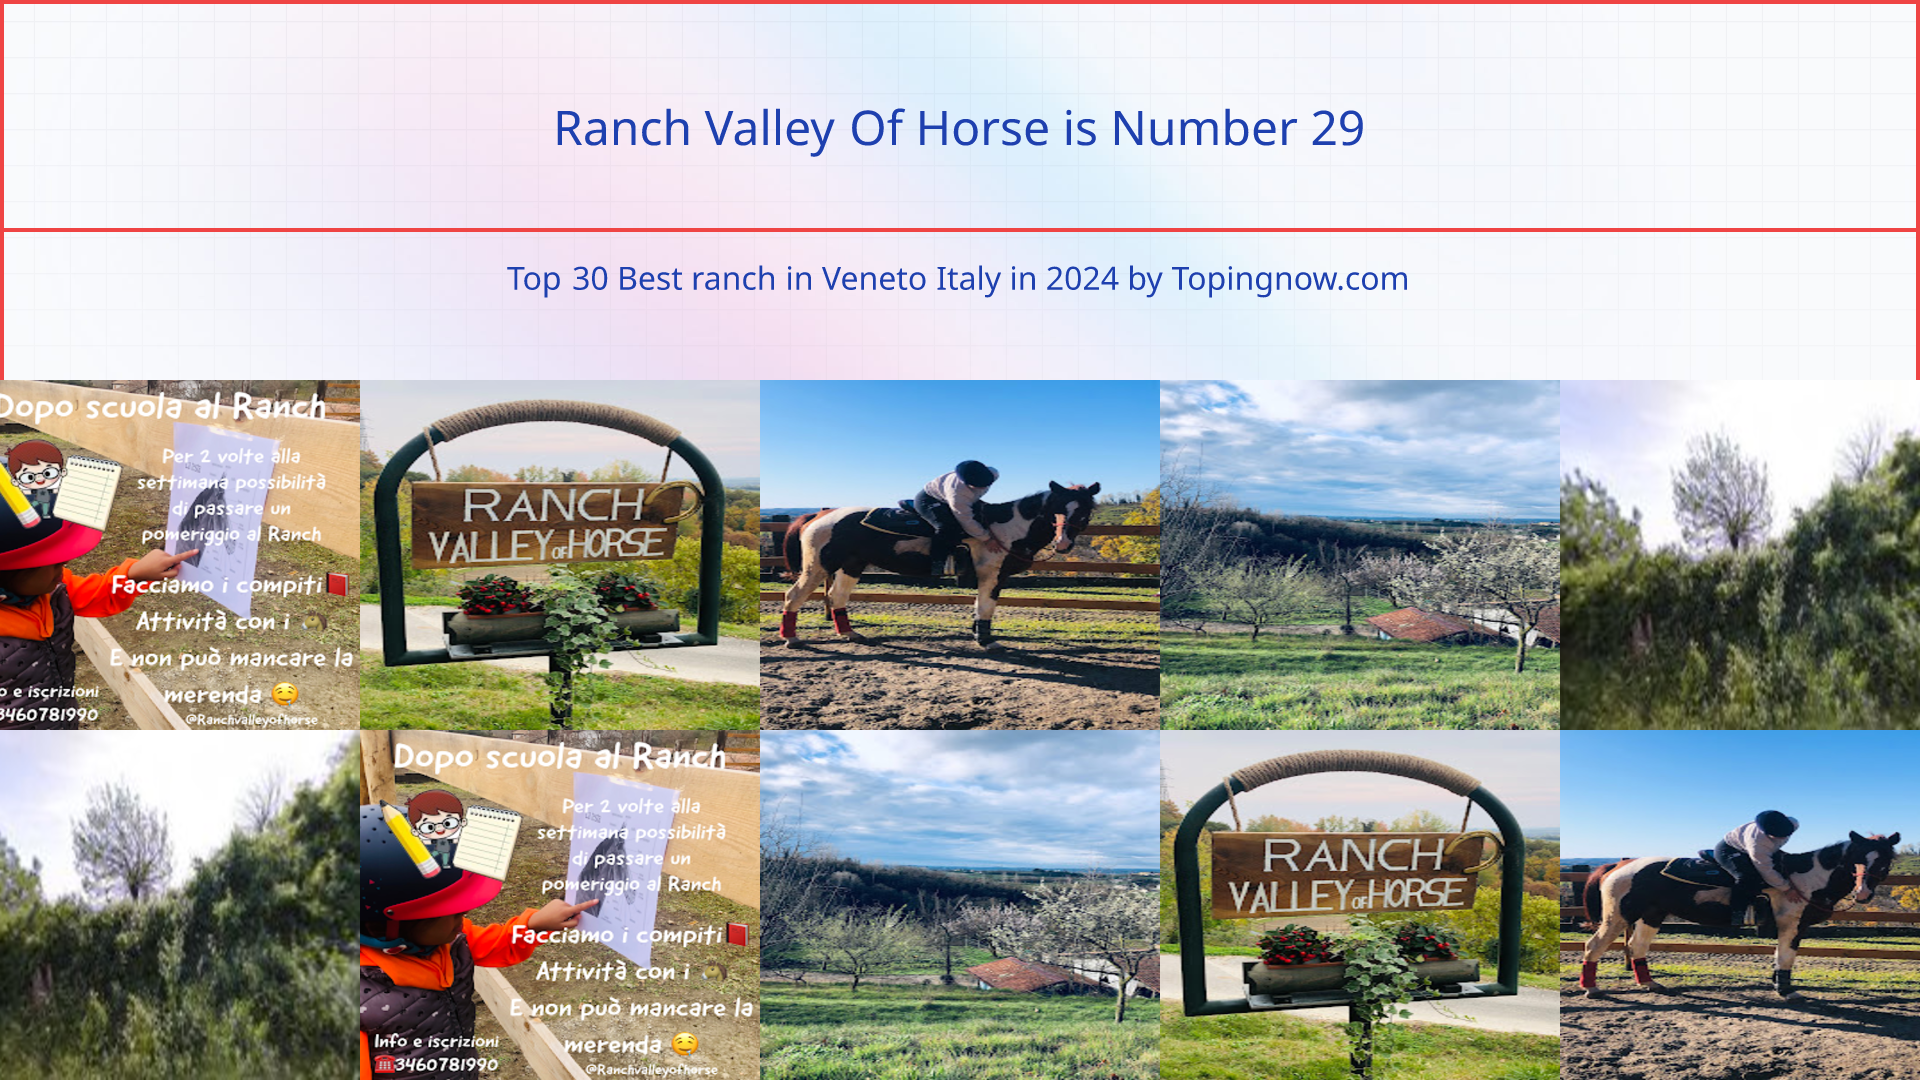 Ranch Valley Of Horse: Top 30 Best ranch in Veneto Italy in 2024